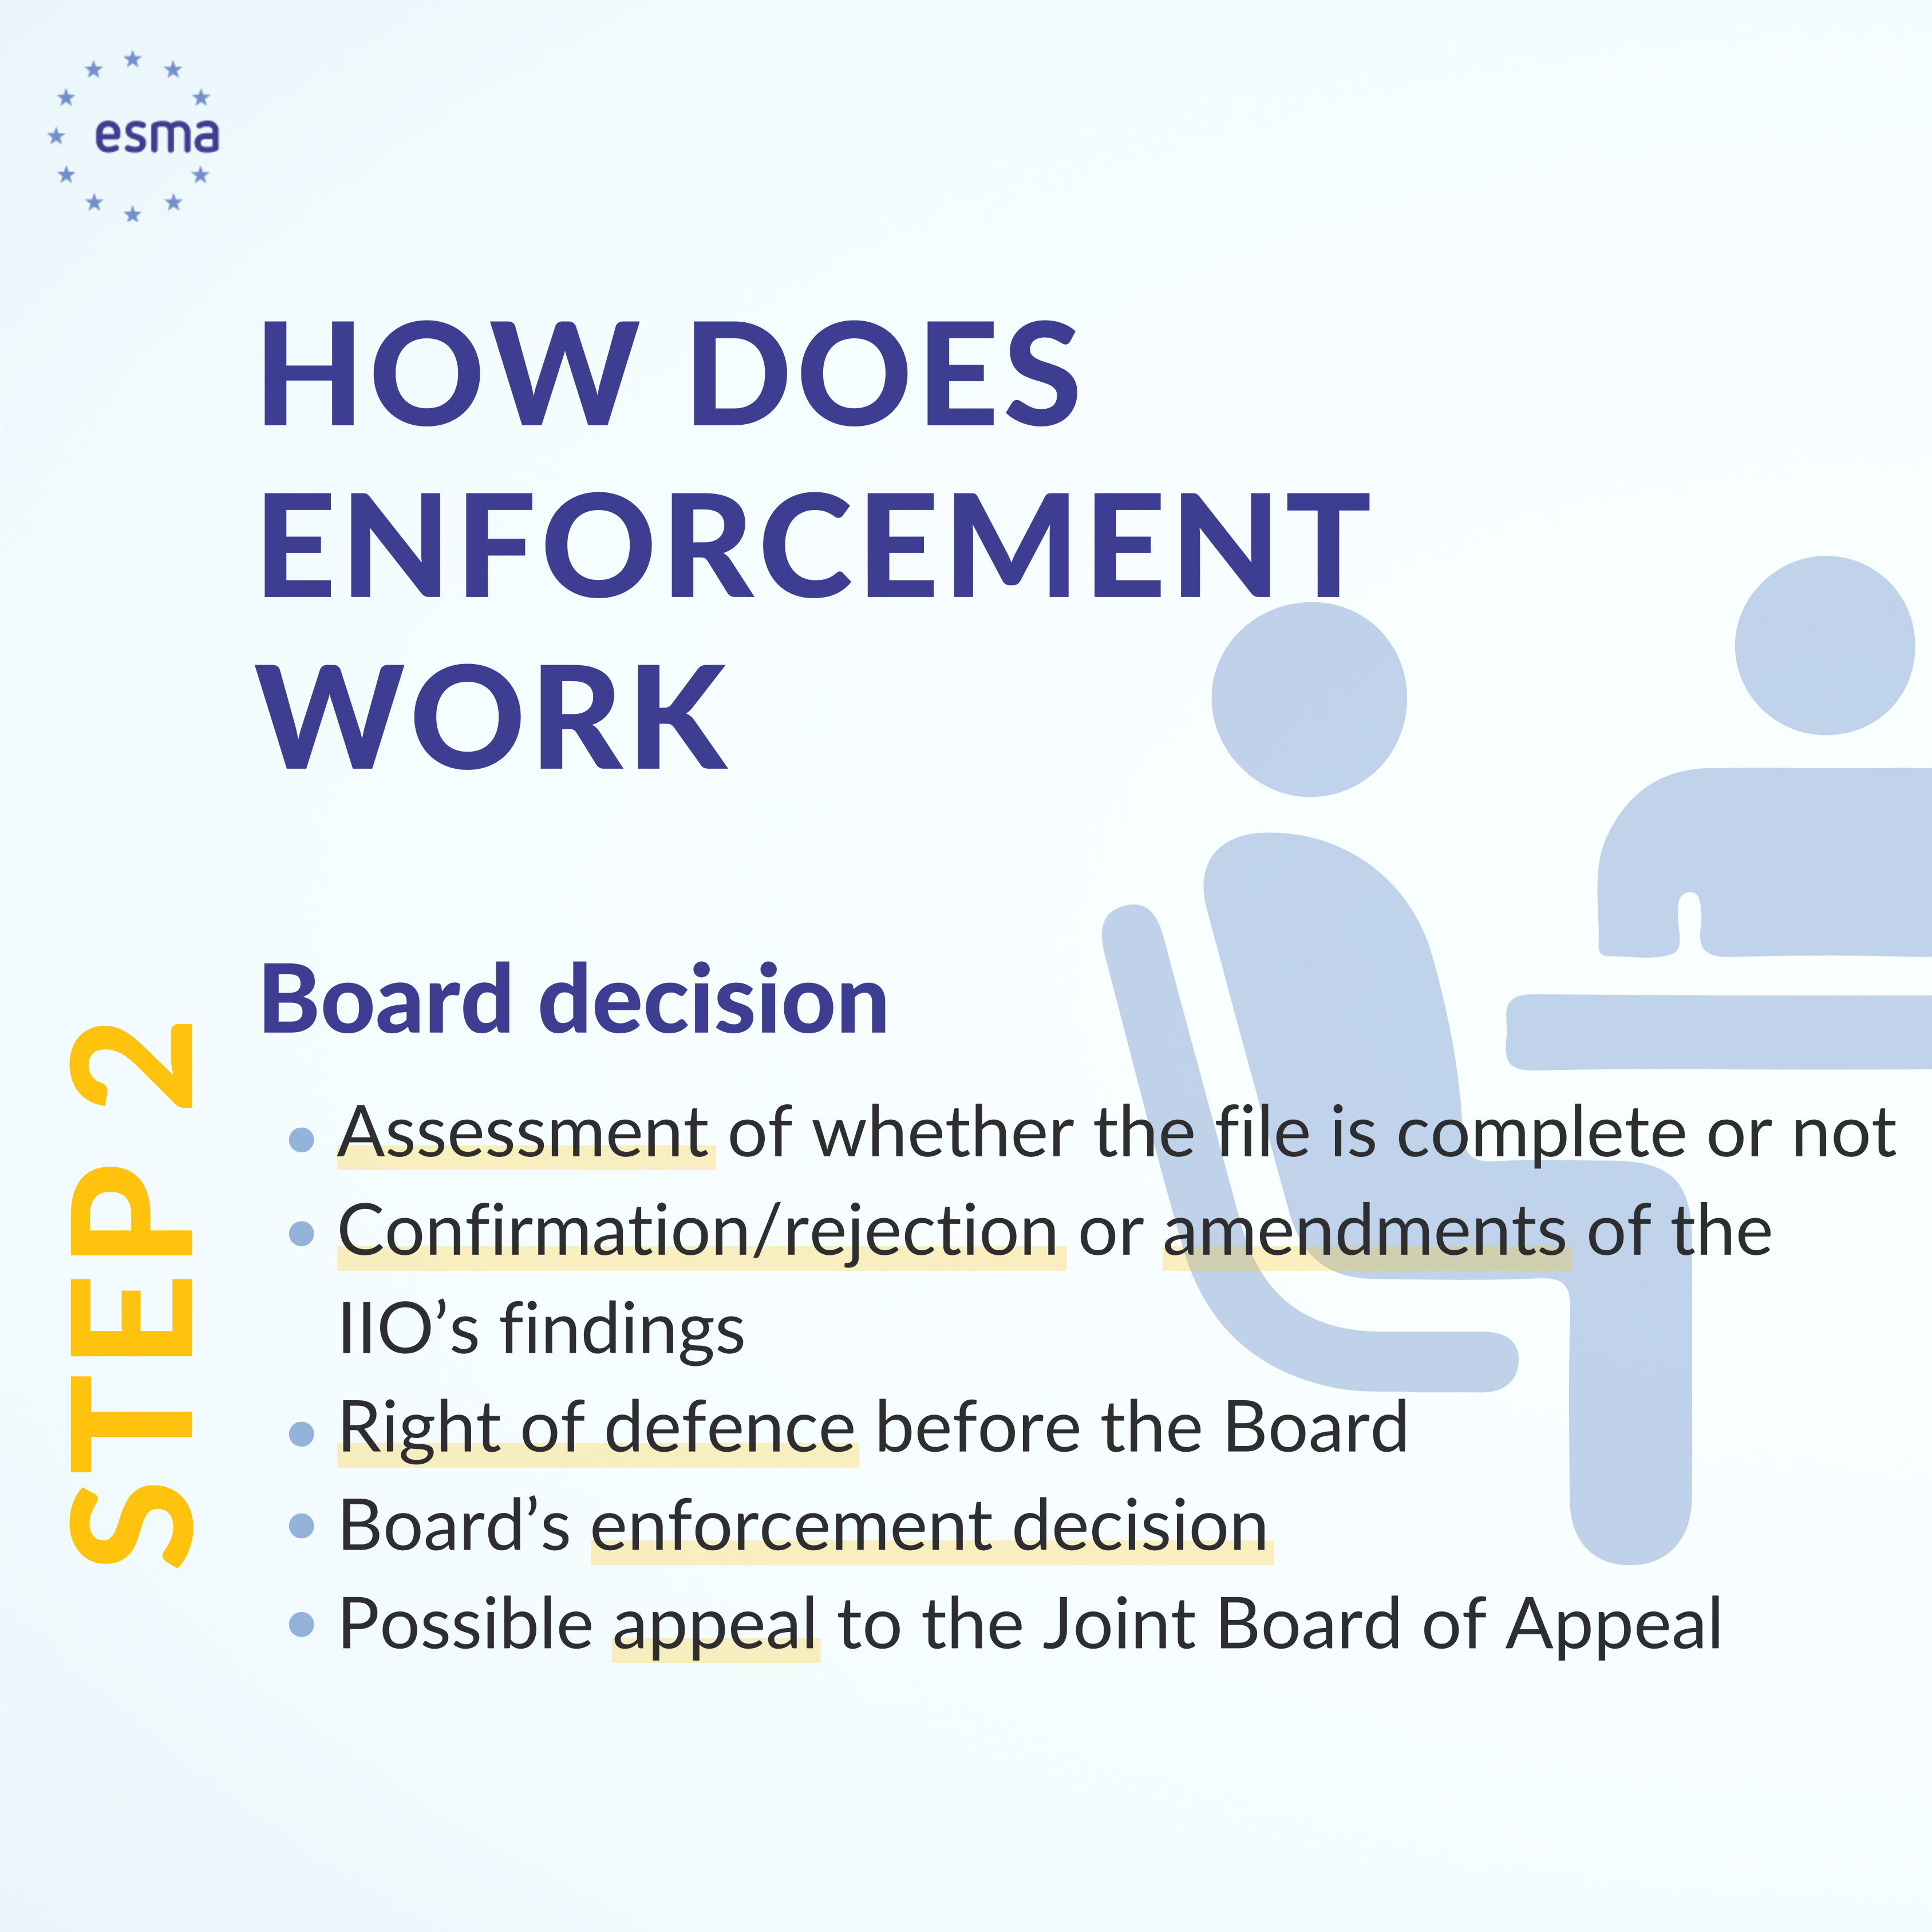 ESMA's Enforcement Role - Board Decision